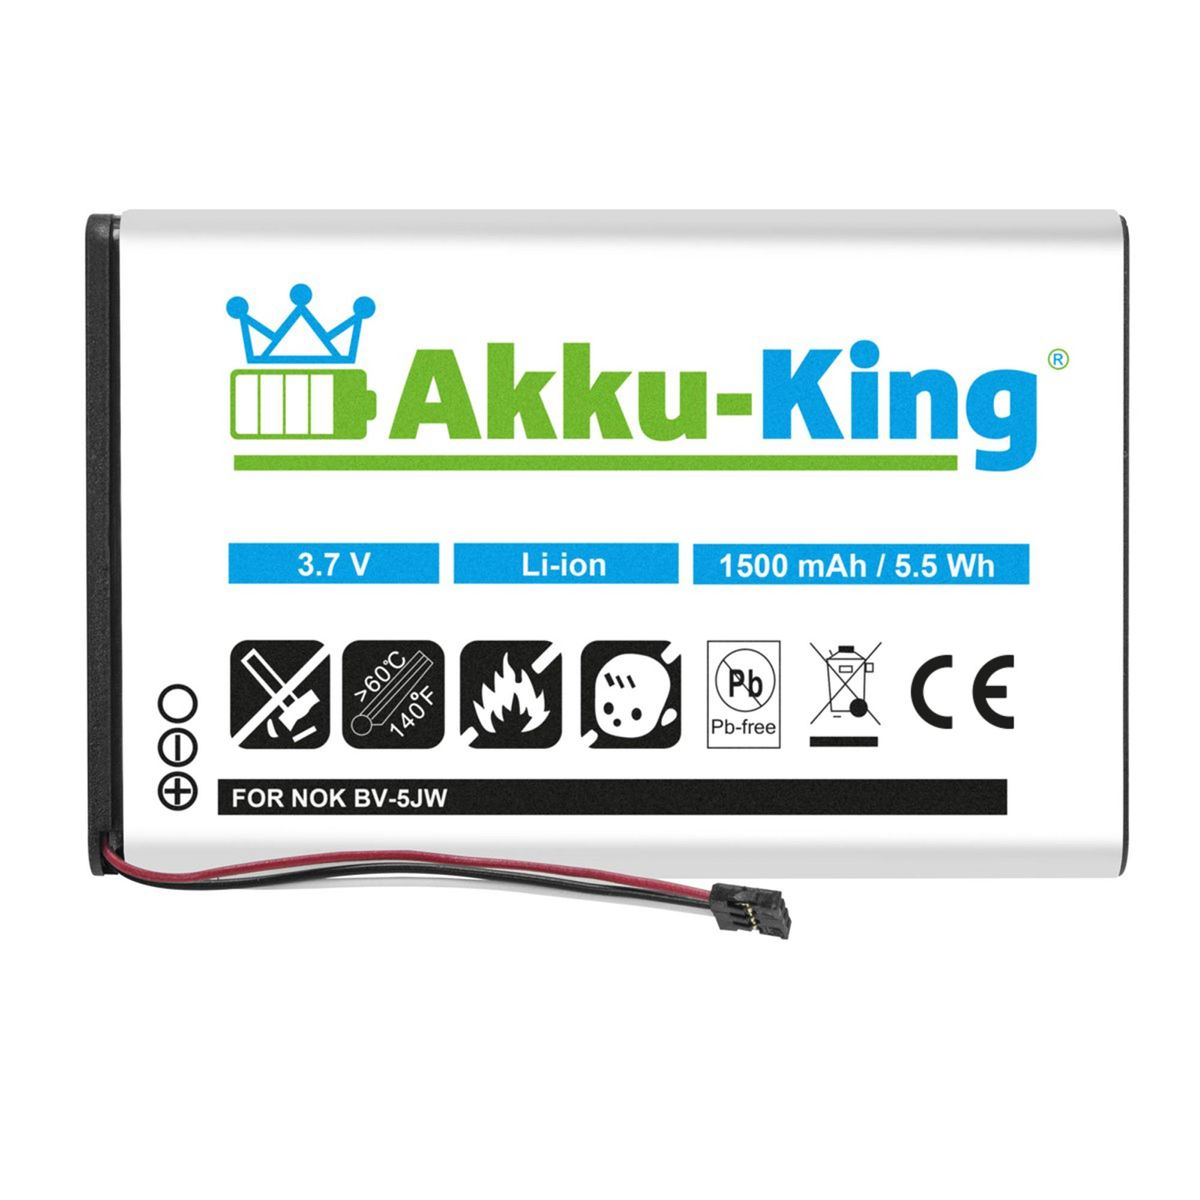 Handy-Akku, Nokia Volt, 3.8 BV-5JW kompatibel AKKU-KING 1500mAh Akku mit Li-Ion